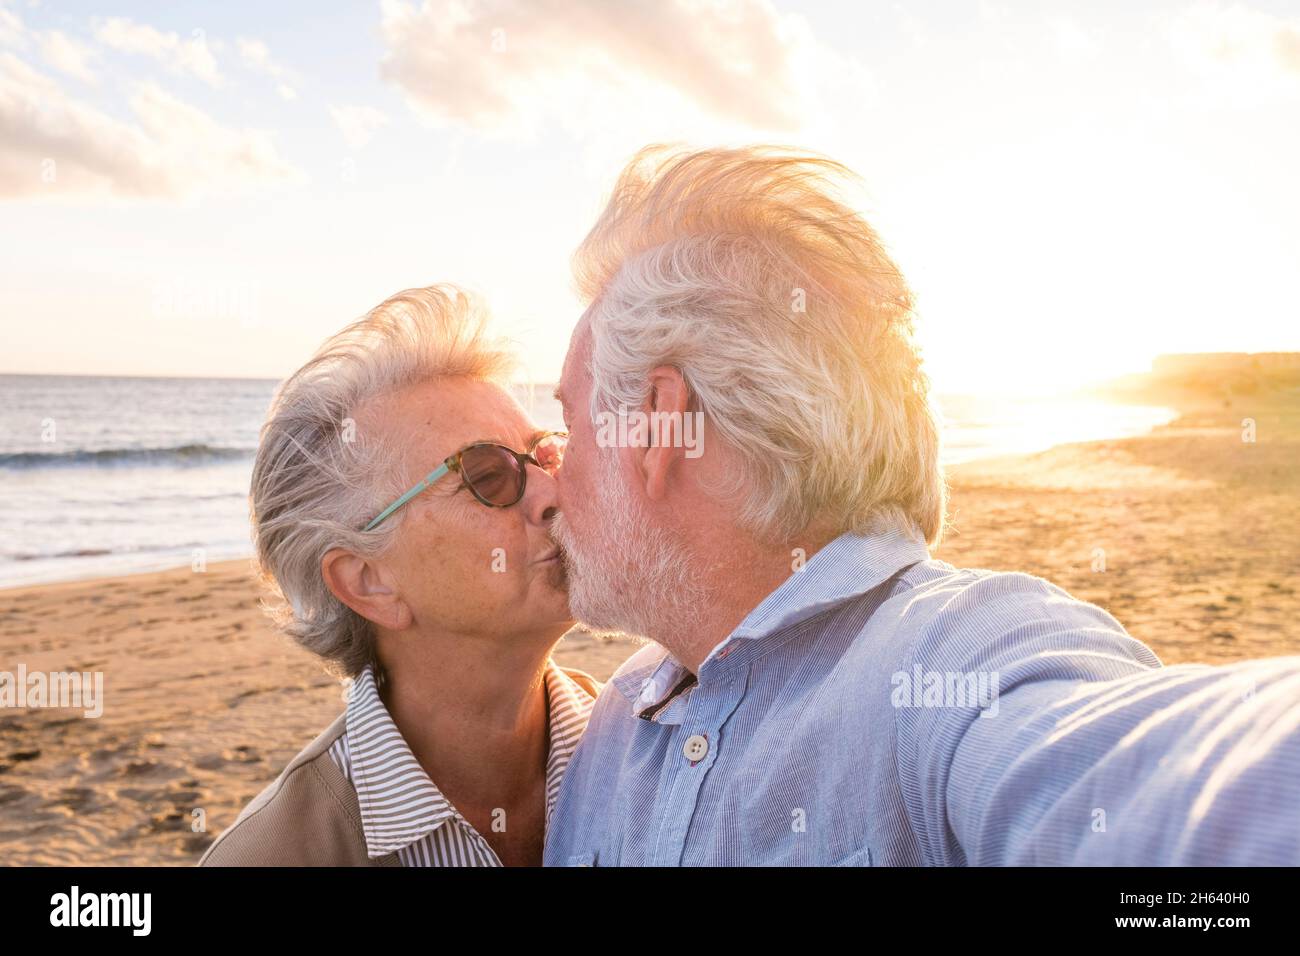 ritratto di coppia di persone anziane e mature che godono l'estate in spiaggia guardando la macchina fotografica prendendo un selfie insieme al tramonto sullo sfondo. due anziani attivi che viaggiano all'aperto. Foto Stock